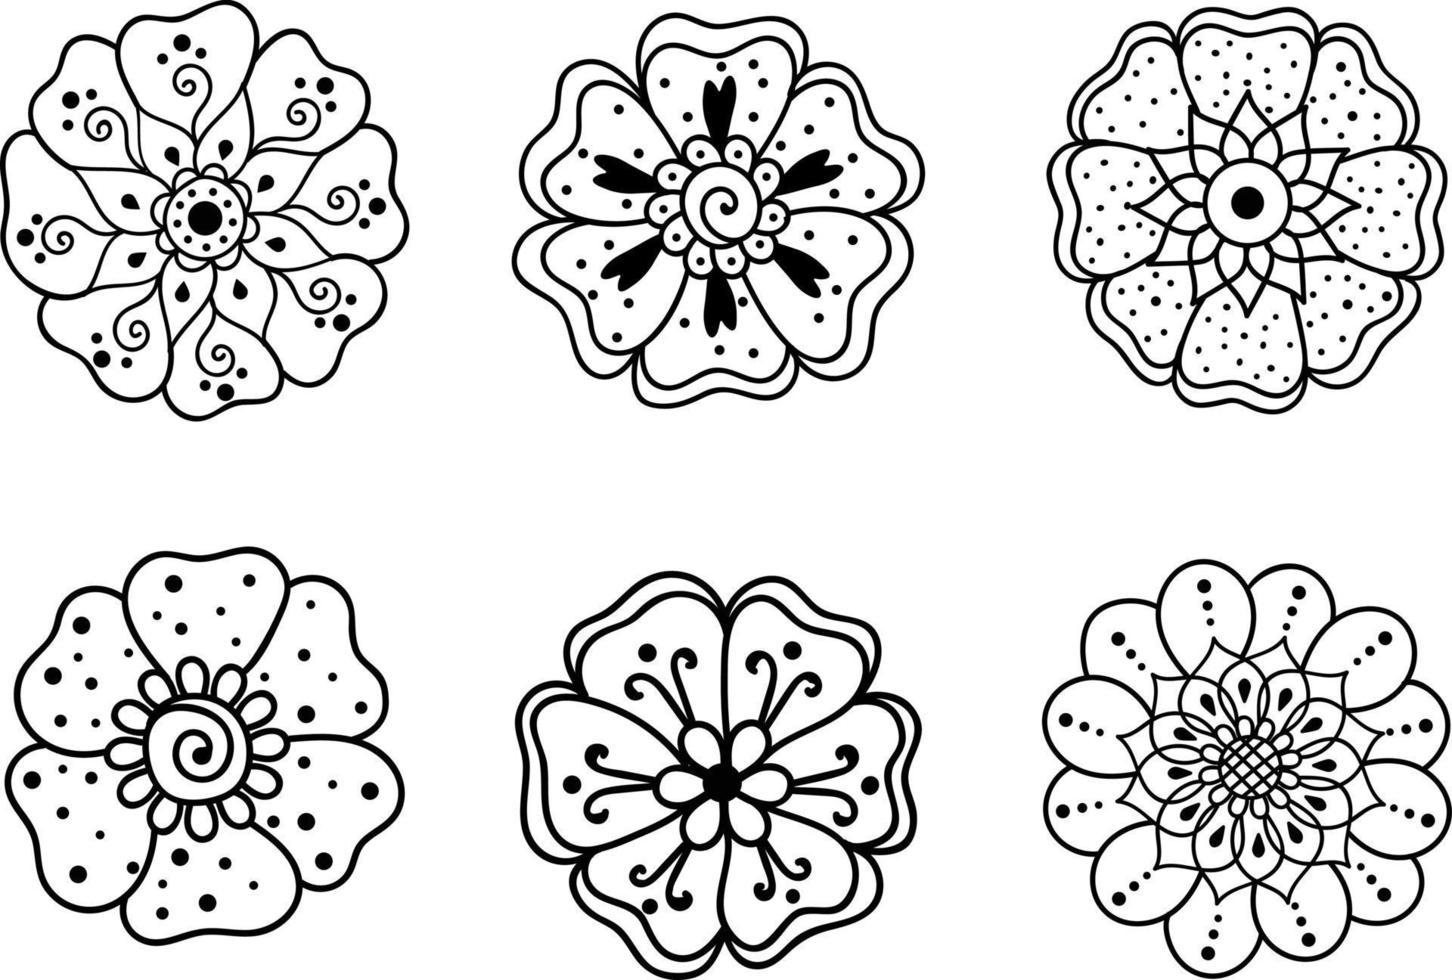 Schwarz-Weiß-Set mit Blumen. Vektorblumen. Konturvektorsymbole für die Gestaltung von Websites und Schnittstellen, mobile Anwendungen, Postkarten, Werbung, Webdesign, Logo, Verpackung, Feiertage. vektor